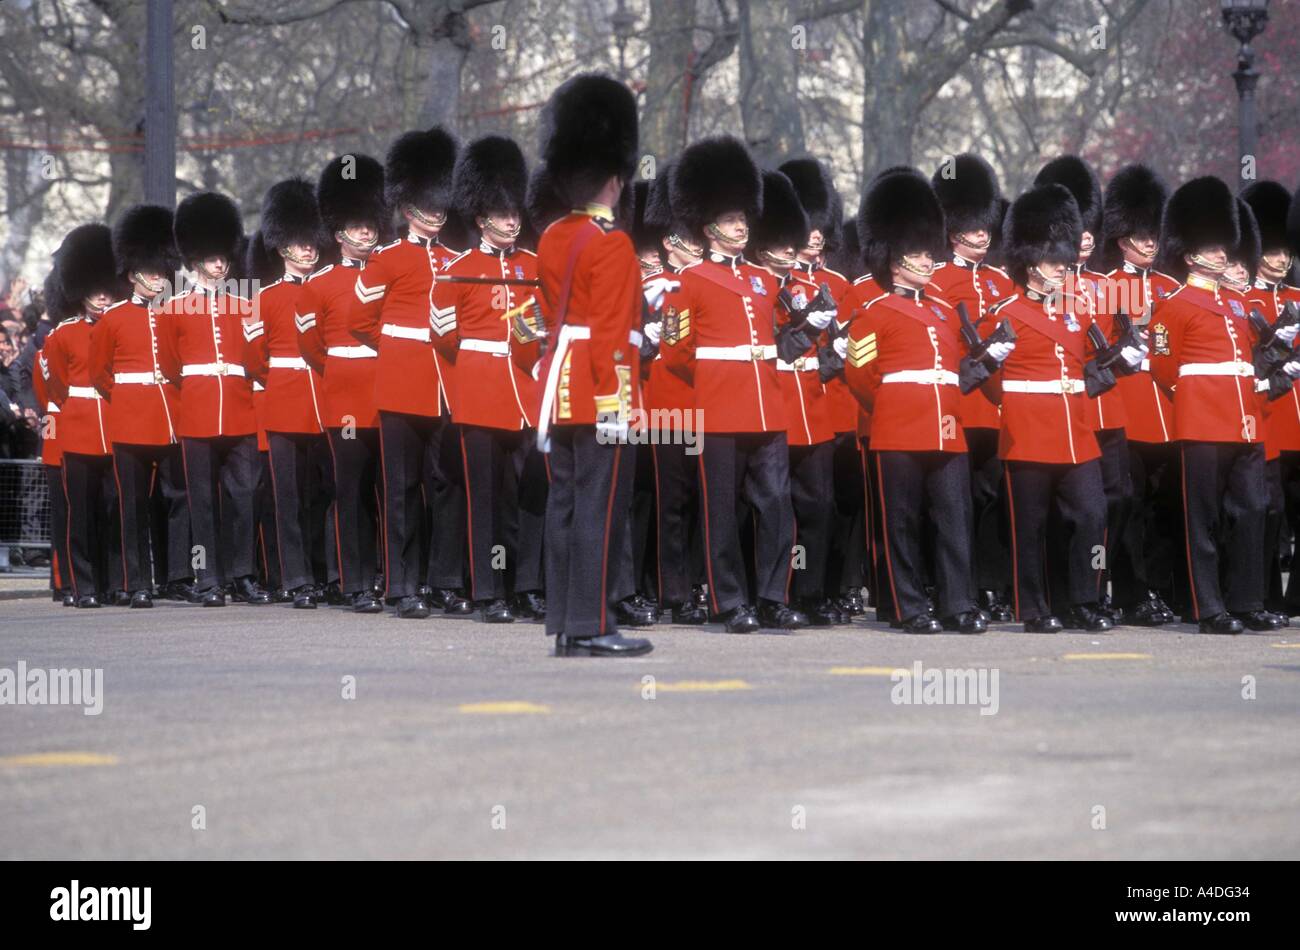 Les Grenadier Guards à l'enterrement de la Reine Mère, Londres 5 avril 2002 Banque D'Images